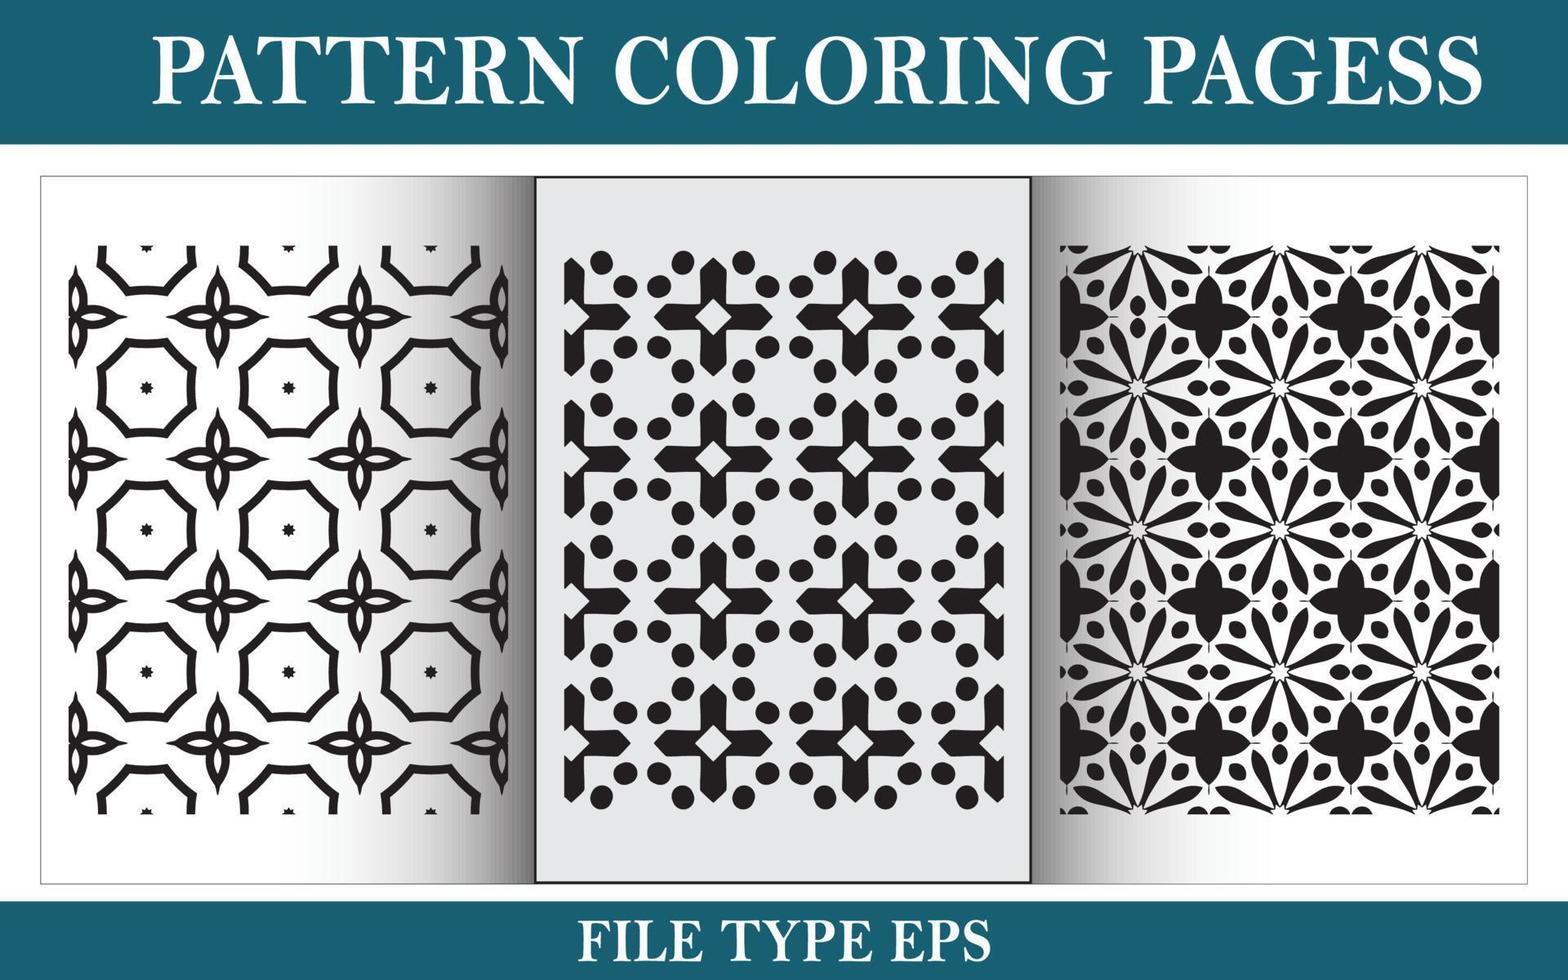 patrón floral para colorear página en blanco y negro vector